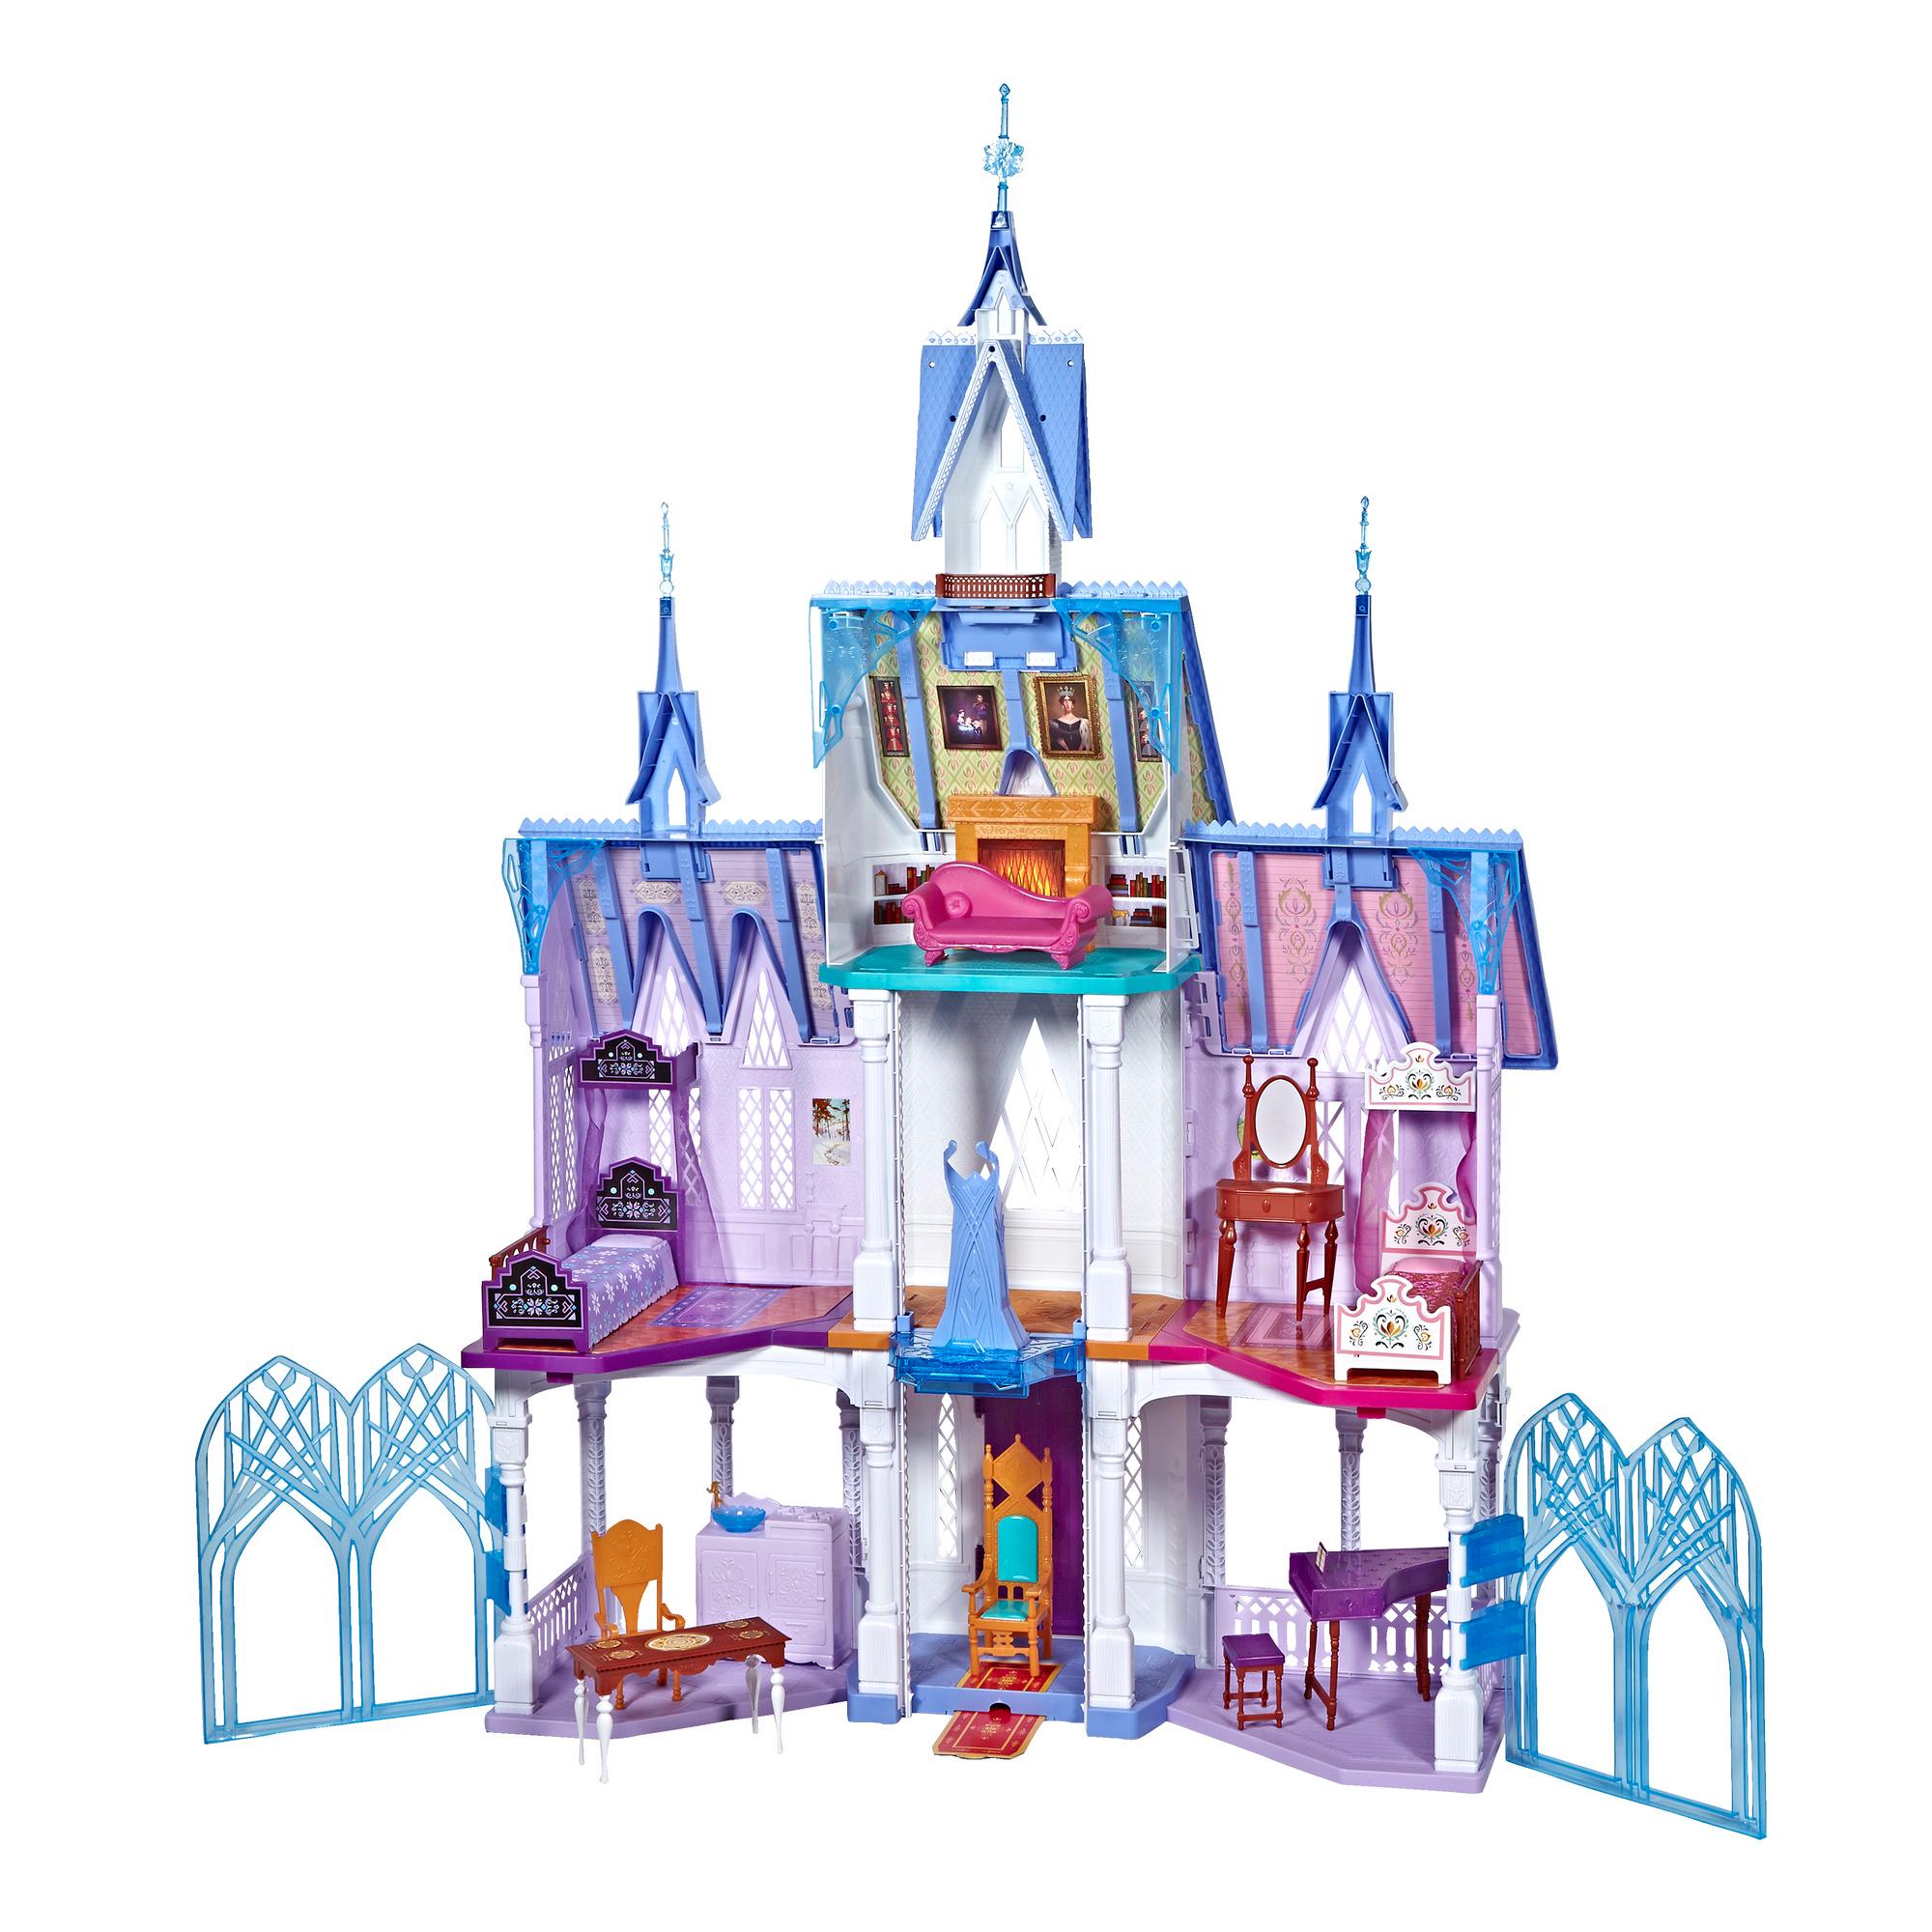 Castelul din Arendelle Hasbro Disney Frozen II imagine hippoland.ro